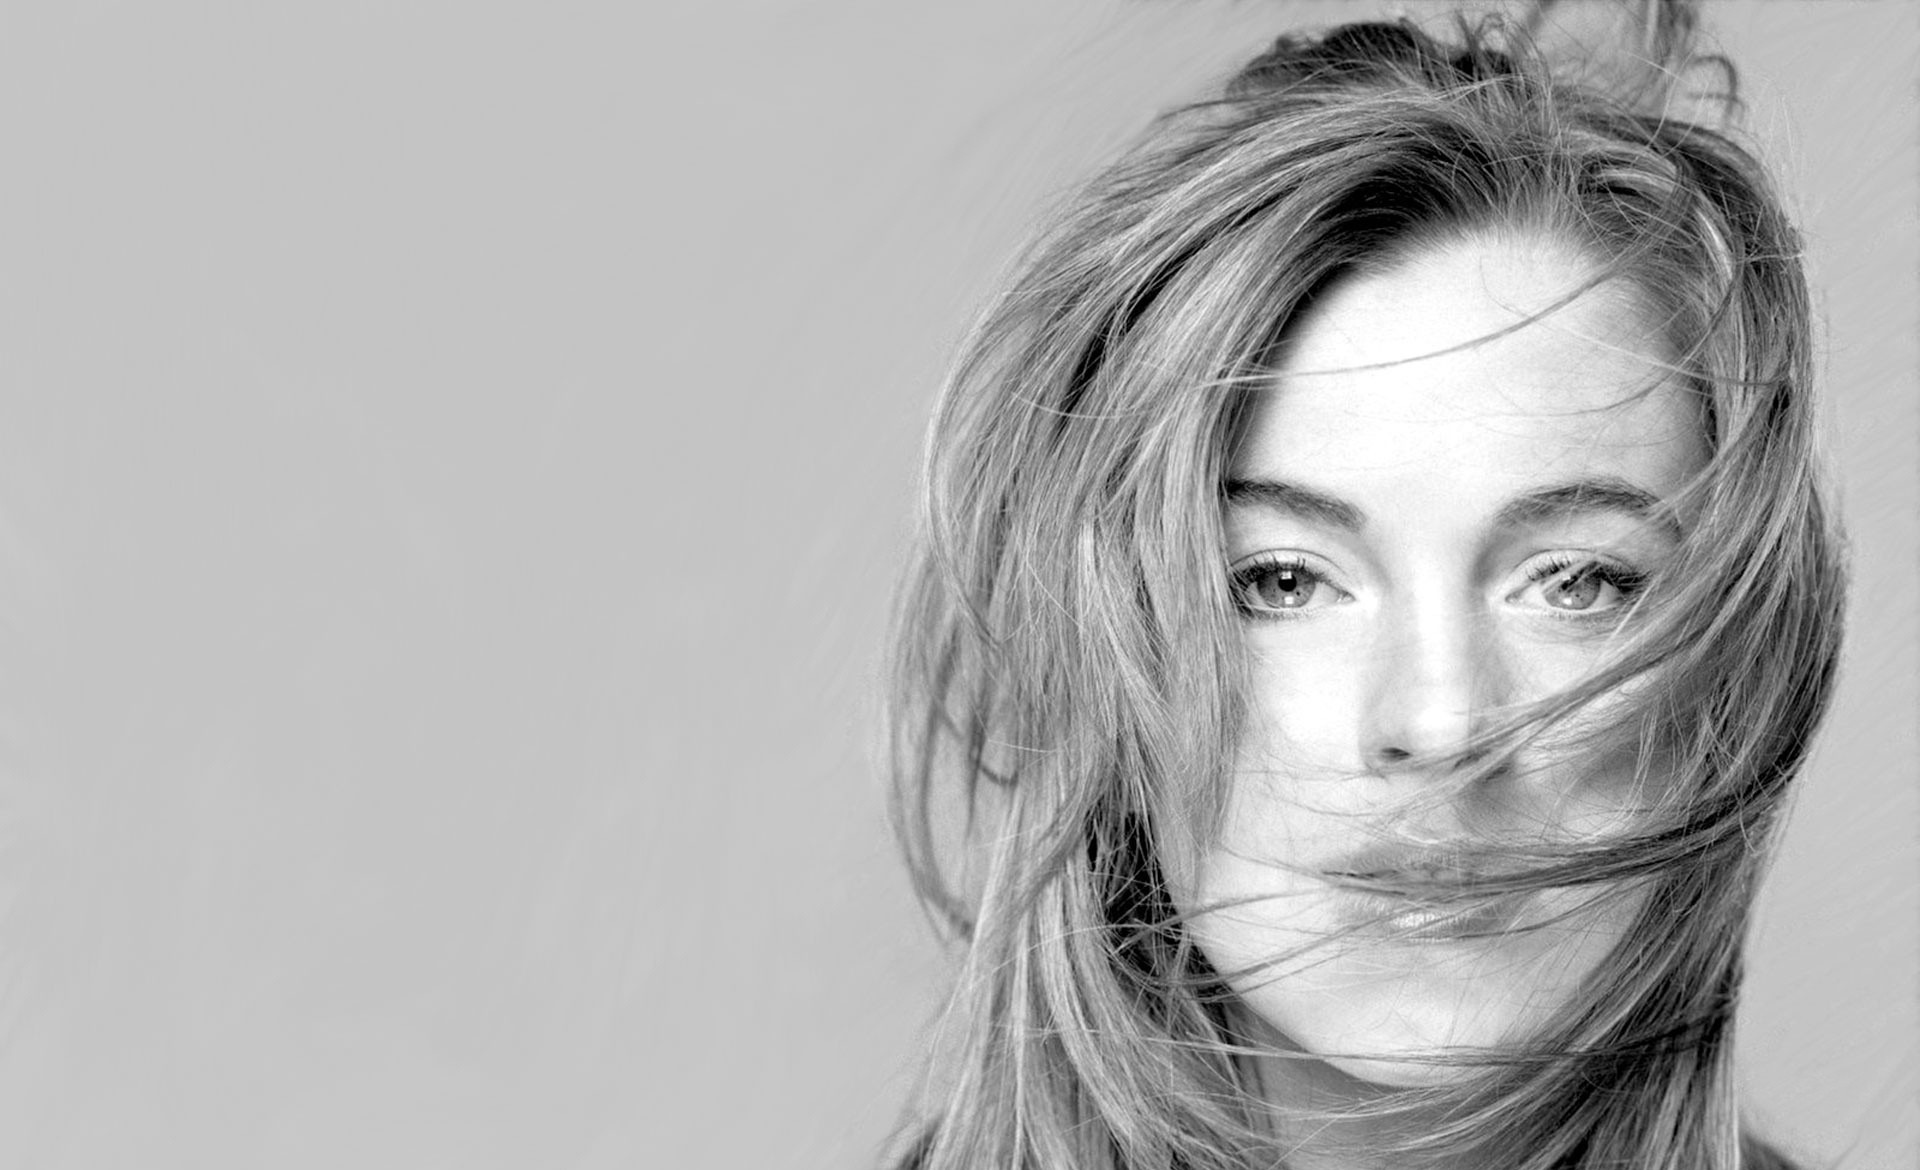 Free download wallpaper Lindsay Lohan, Celebrity on your PC desktop